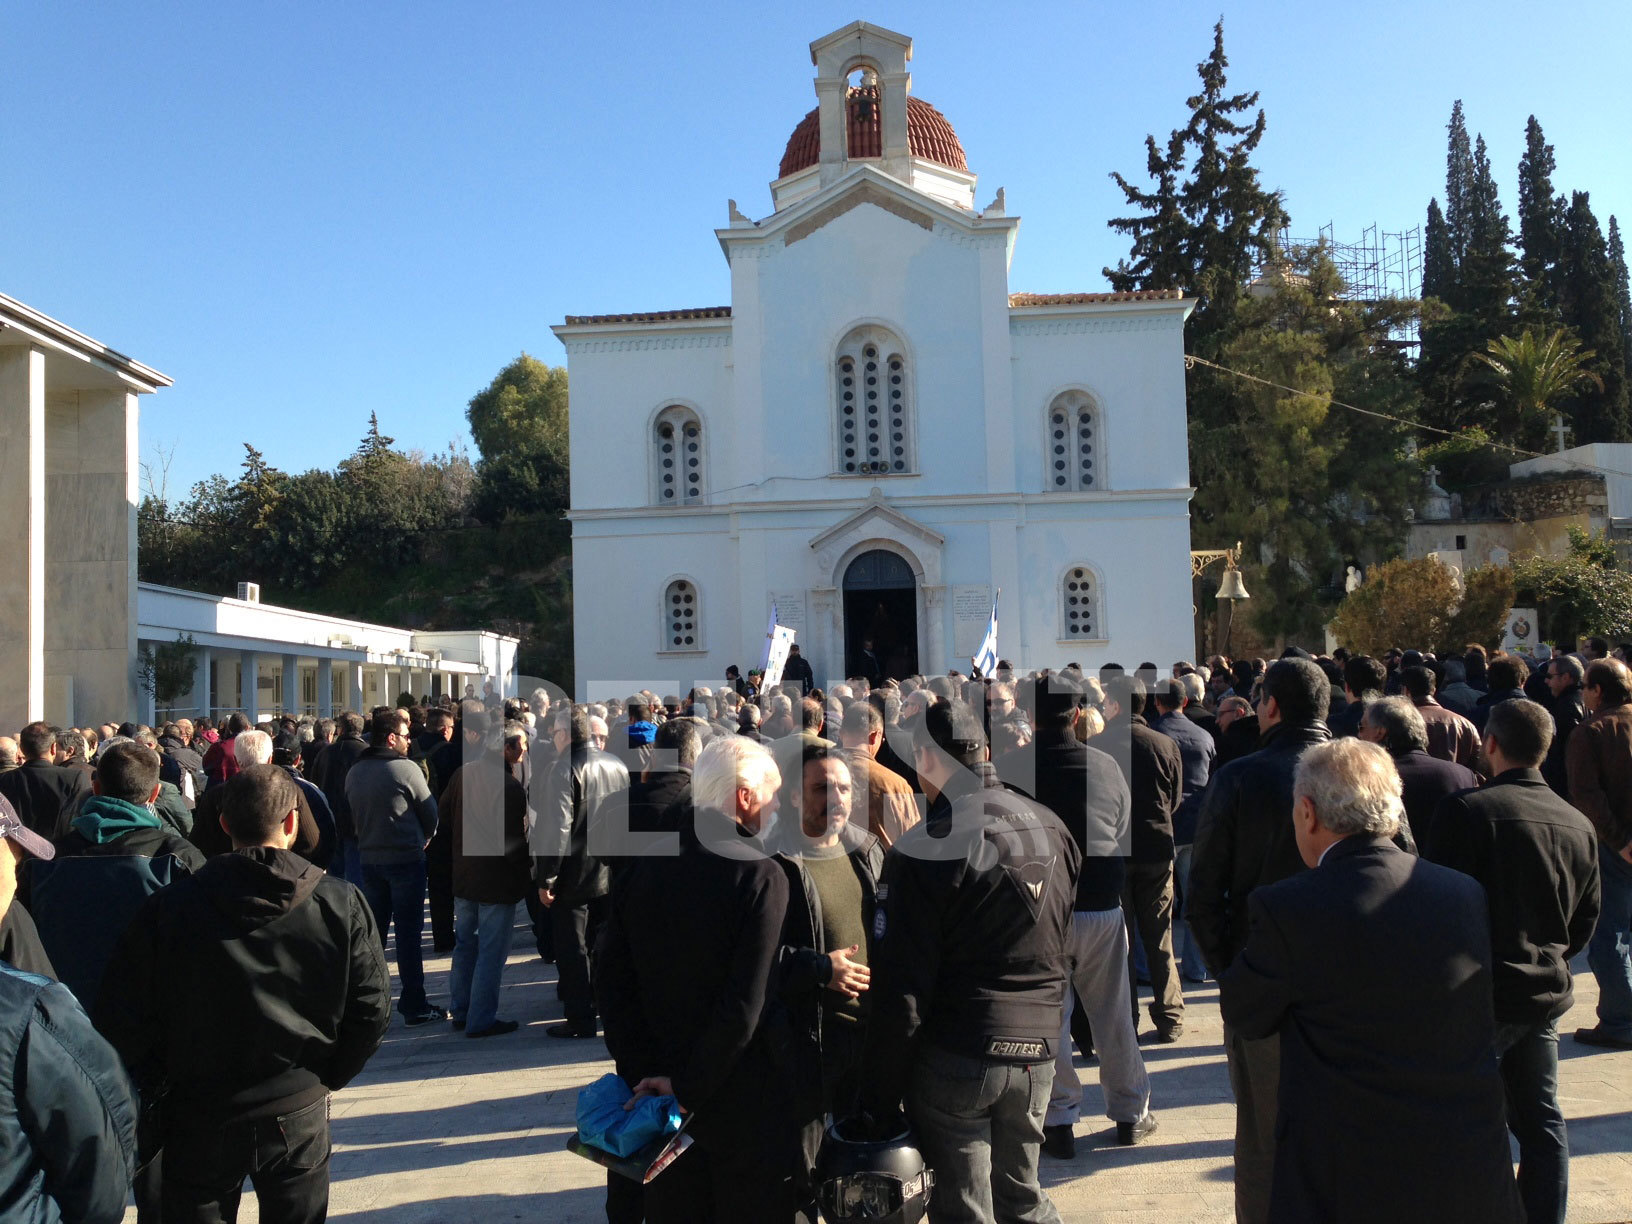 “Μικροκομματική πονηριά η ανακοίνωση του ΣΥΡΙΖΑ για τις μπαλωθιές στη κηδεία του Ντερτιλή”